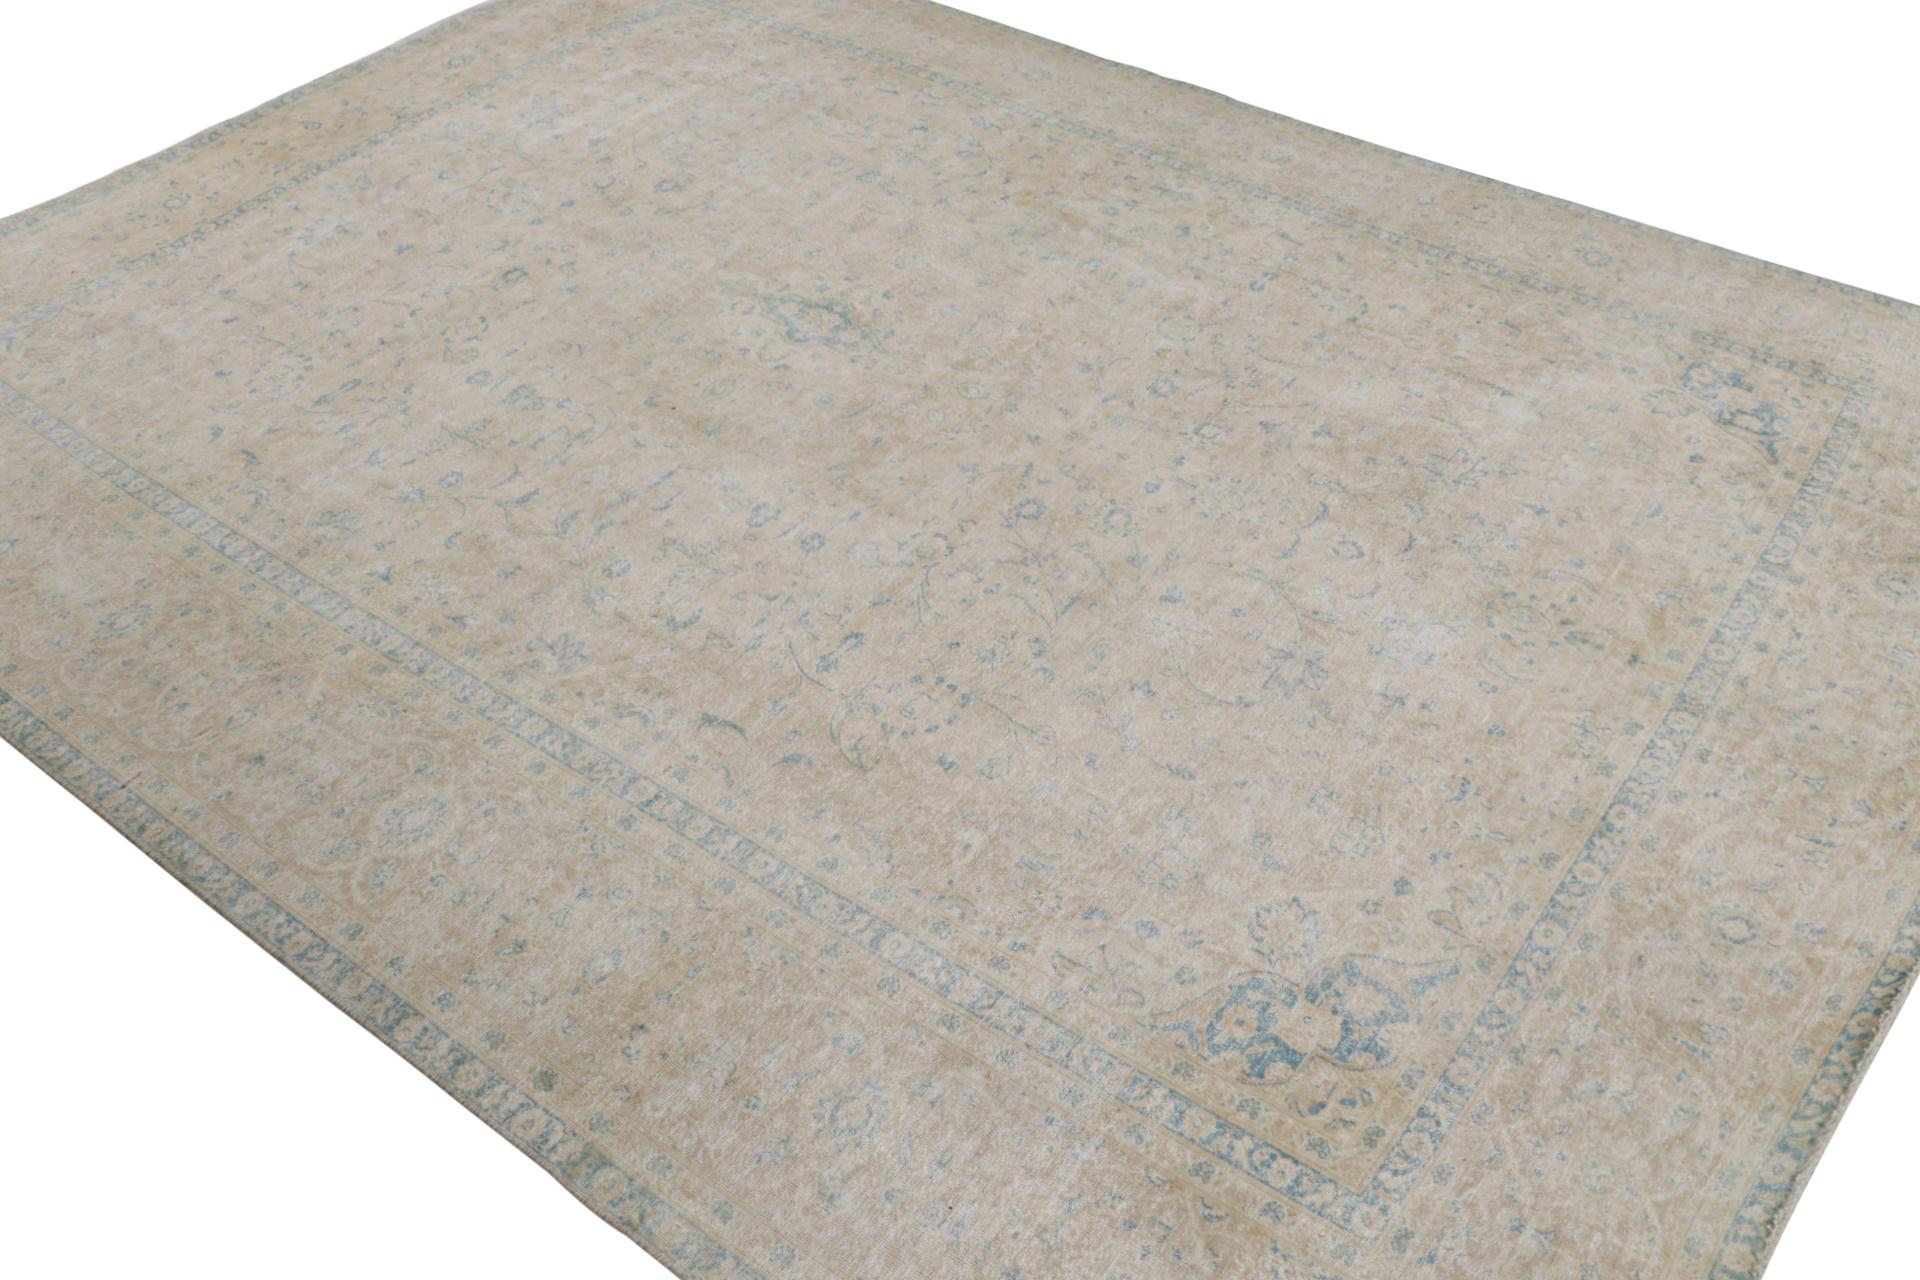 Noué à la main en laine, un tapis persan 9x11 datant de 1970-1980 - le dernier à rejoindre les sélections vintage de Rug & Kilim.

Sur le Design :

Le tapis polychrome bénéficie d'un lavage antique créant son aspect shabby-chic et vieilli tout en